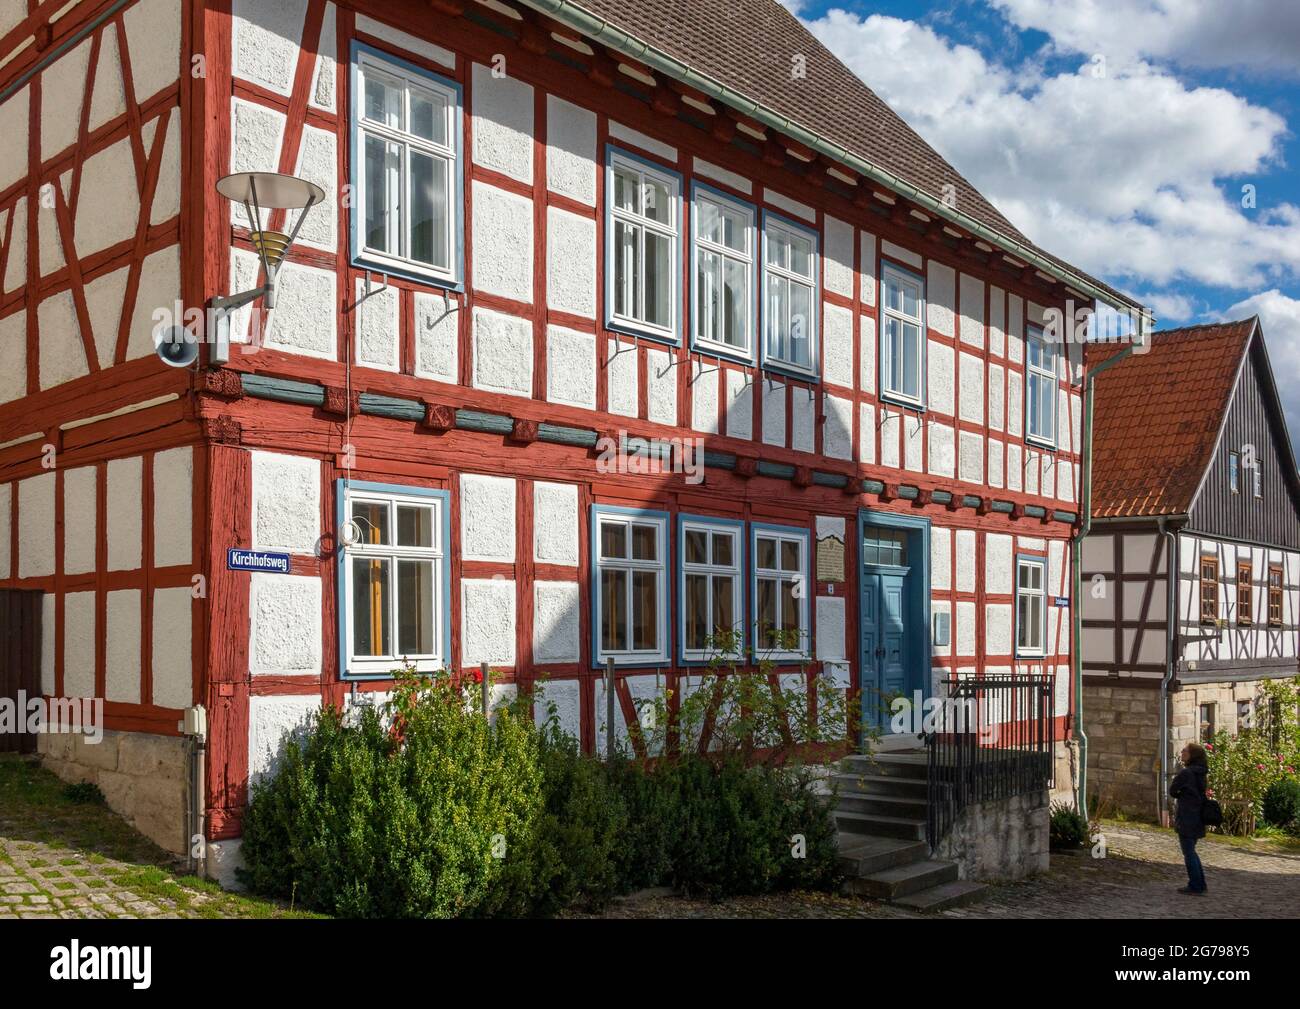 Ummerstadt est (2019) la plus petite ville de Thuringe. La vieille ville historique d'Ummerstadt, avec ses nombreuses maisons à colombages, est un bâtiment classé. La place du marché à l'extrémité supérieure de laquelle est le lieu de naissance de Friedrich Konrad Müller vaut particulièrement la peine d'être vu. Müller, qui s'appelle "üller von der Werra", est le fondateur de l'Association des chanteurs allemands. Banque D'Images